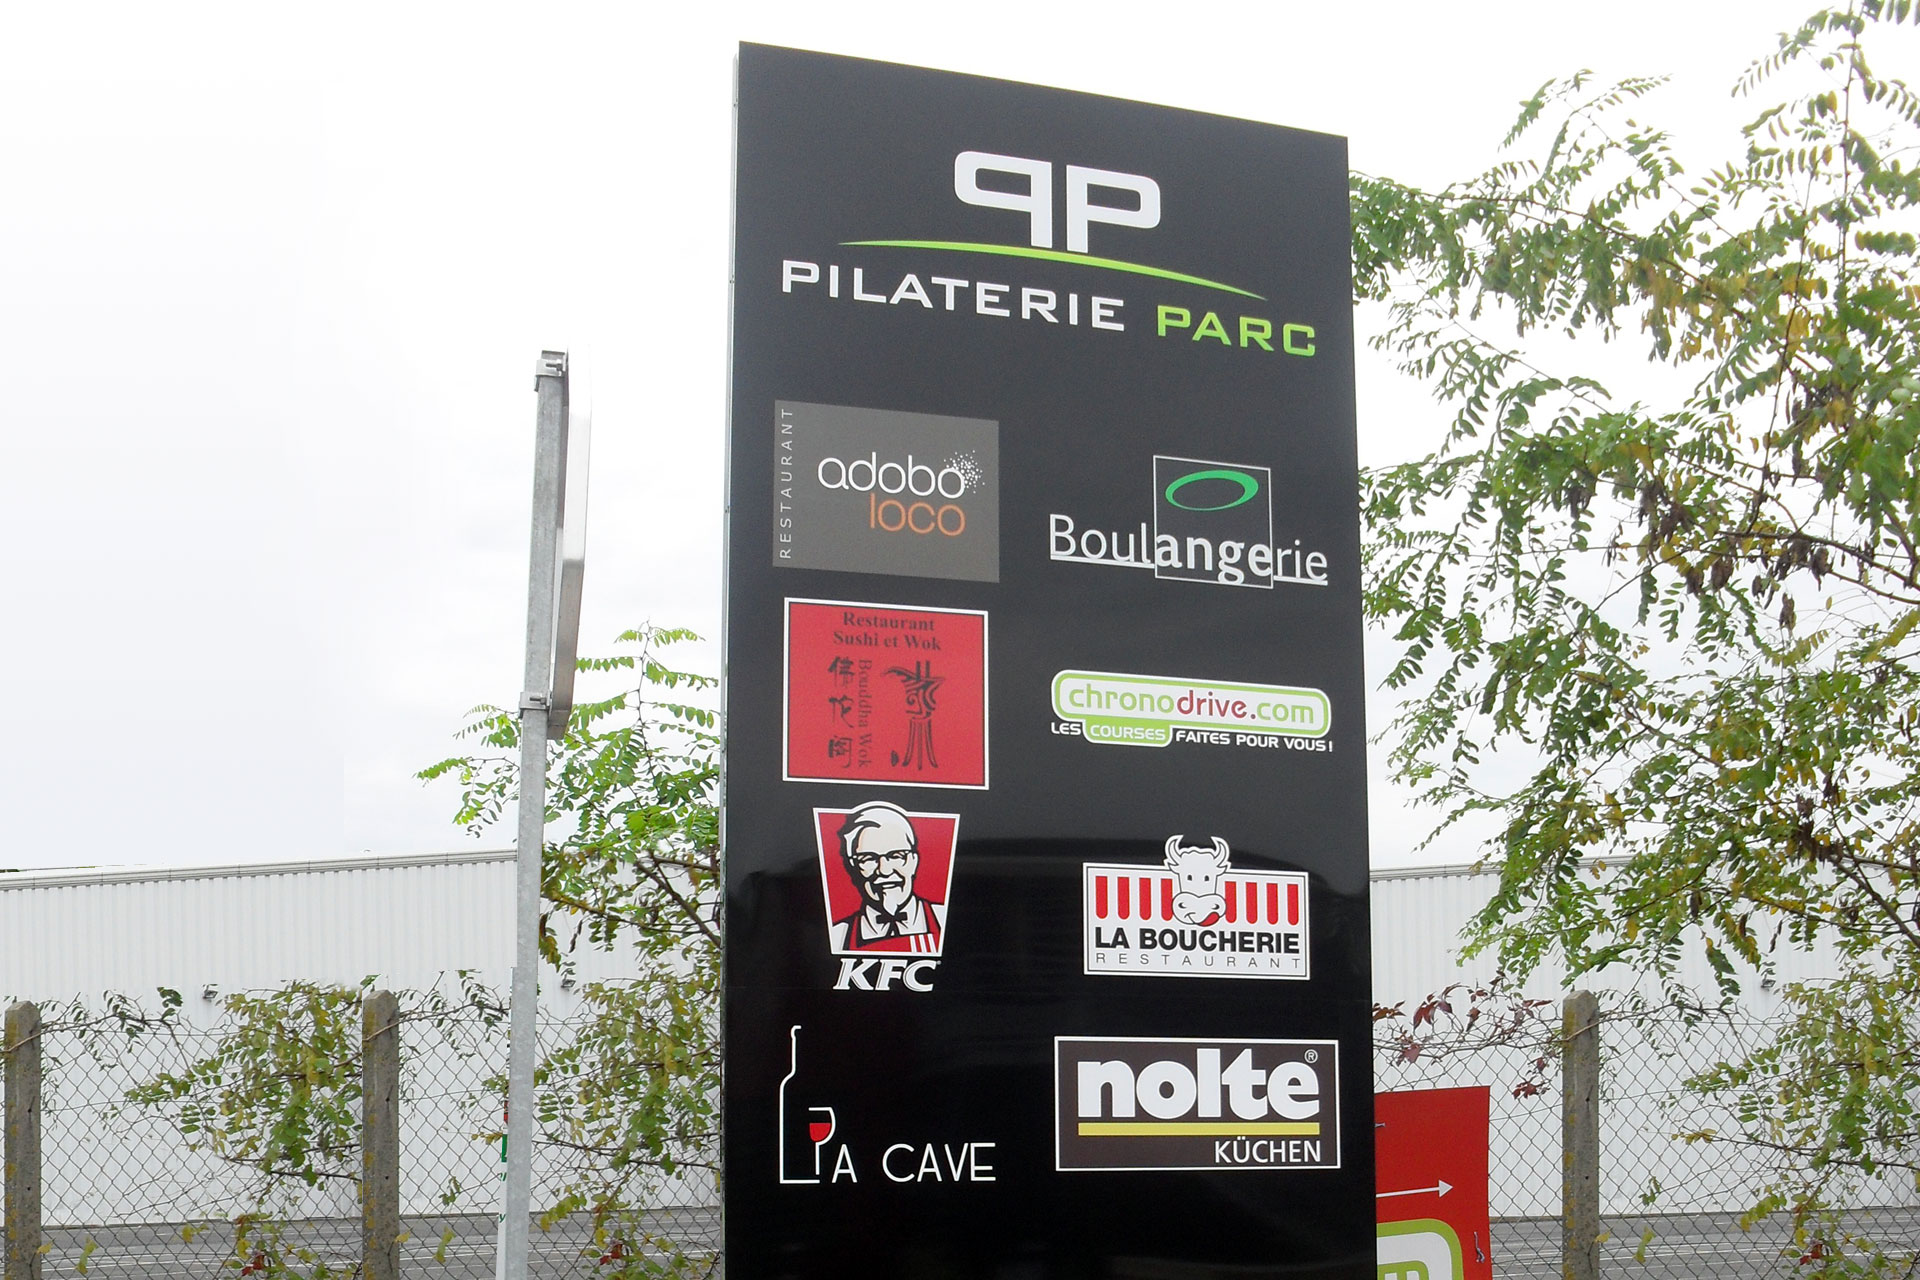 Pilaterie Parc - VILLENEUVE D'ASCQ